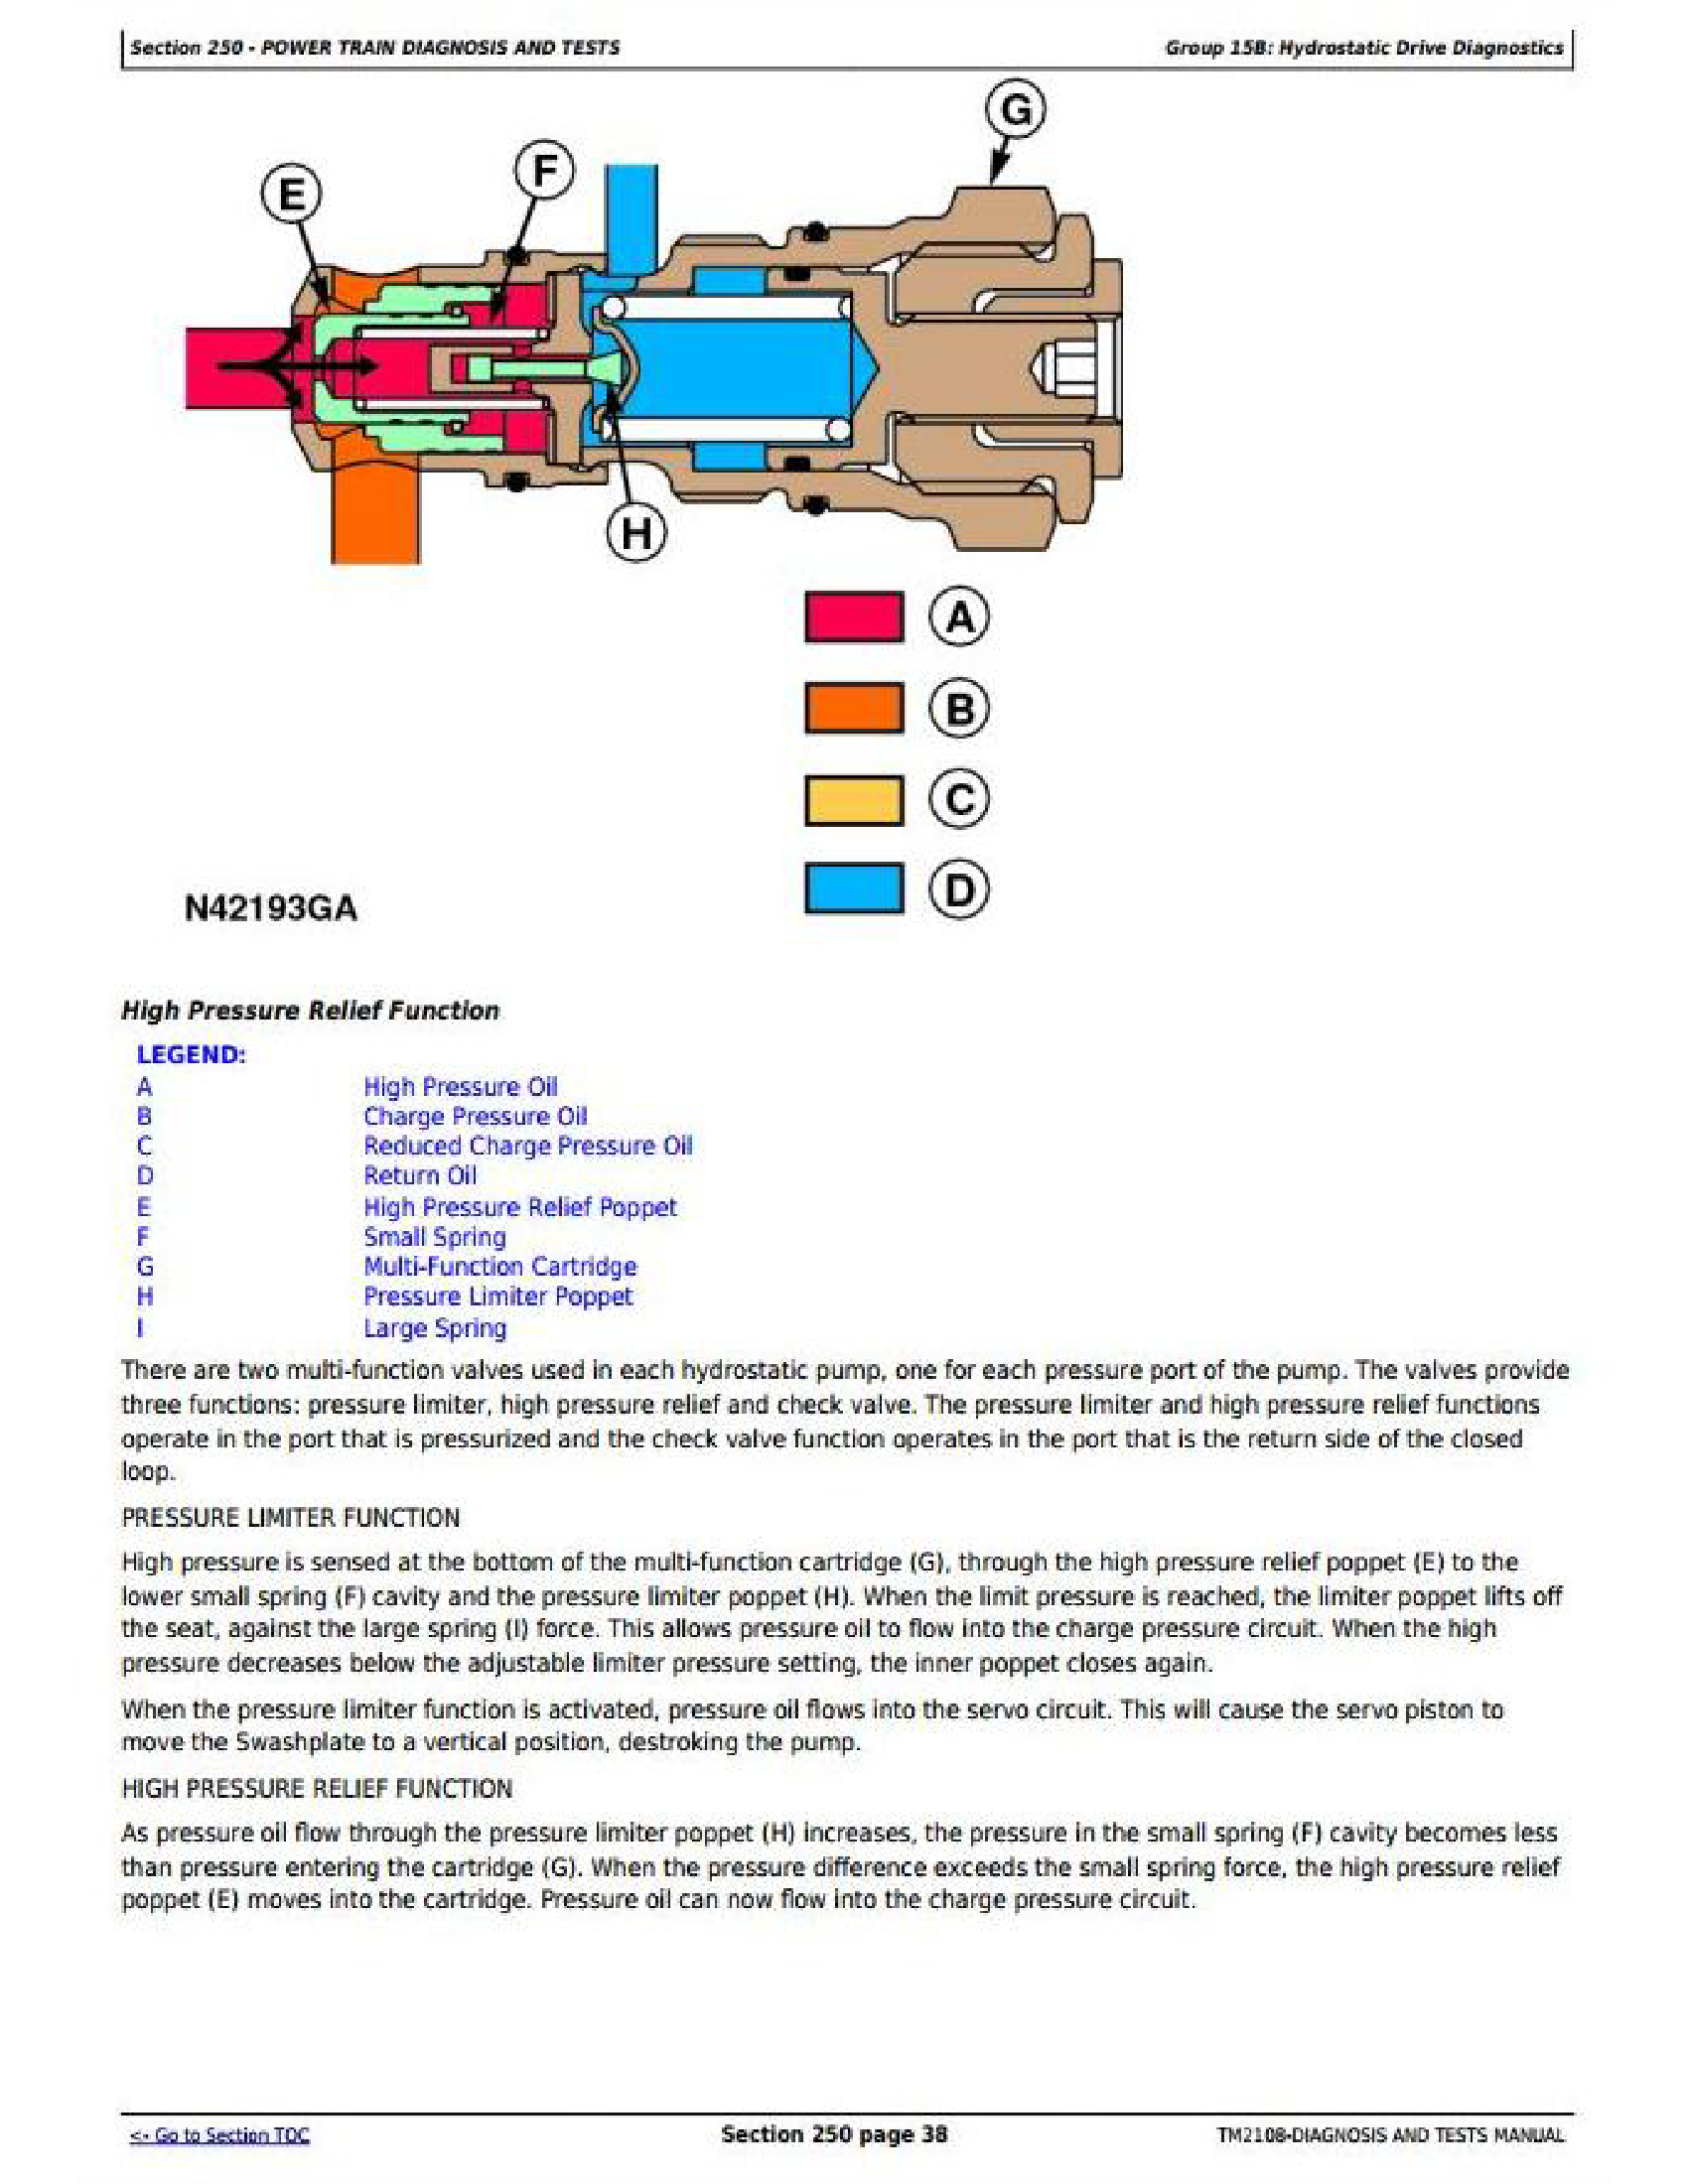 John Deere S440 manual pdf